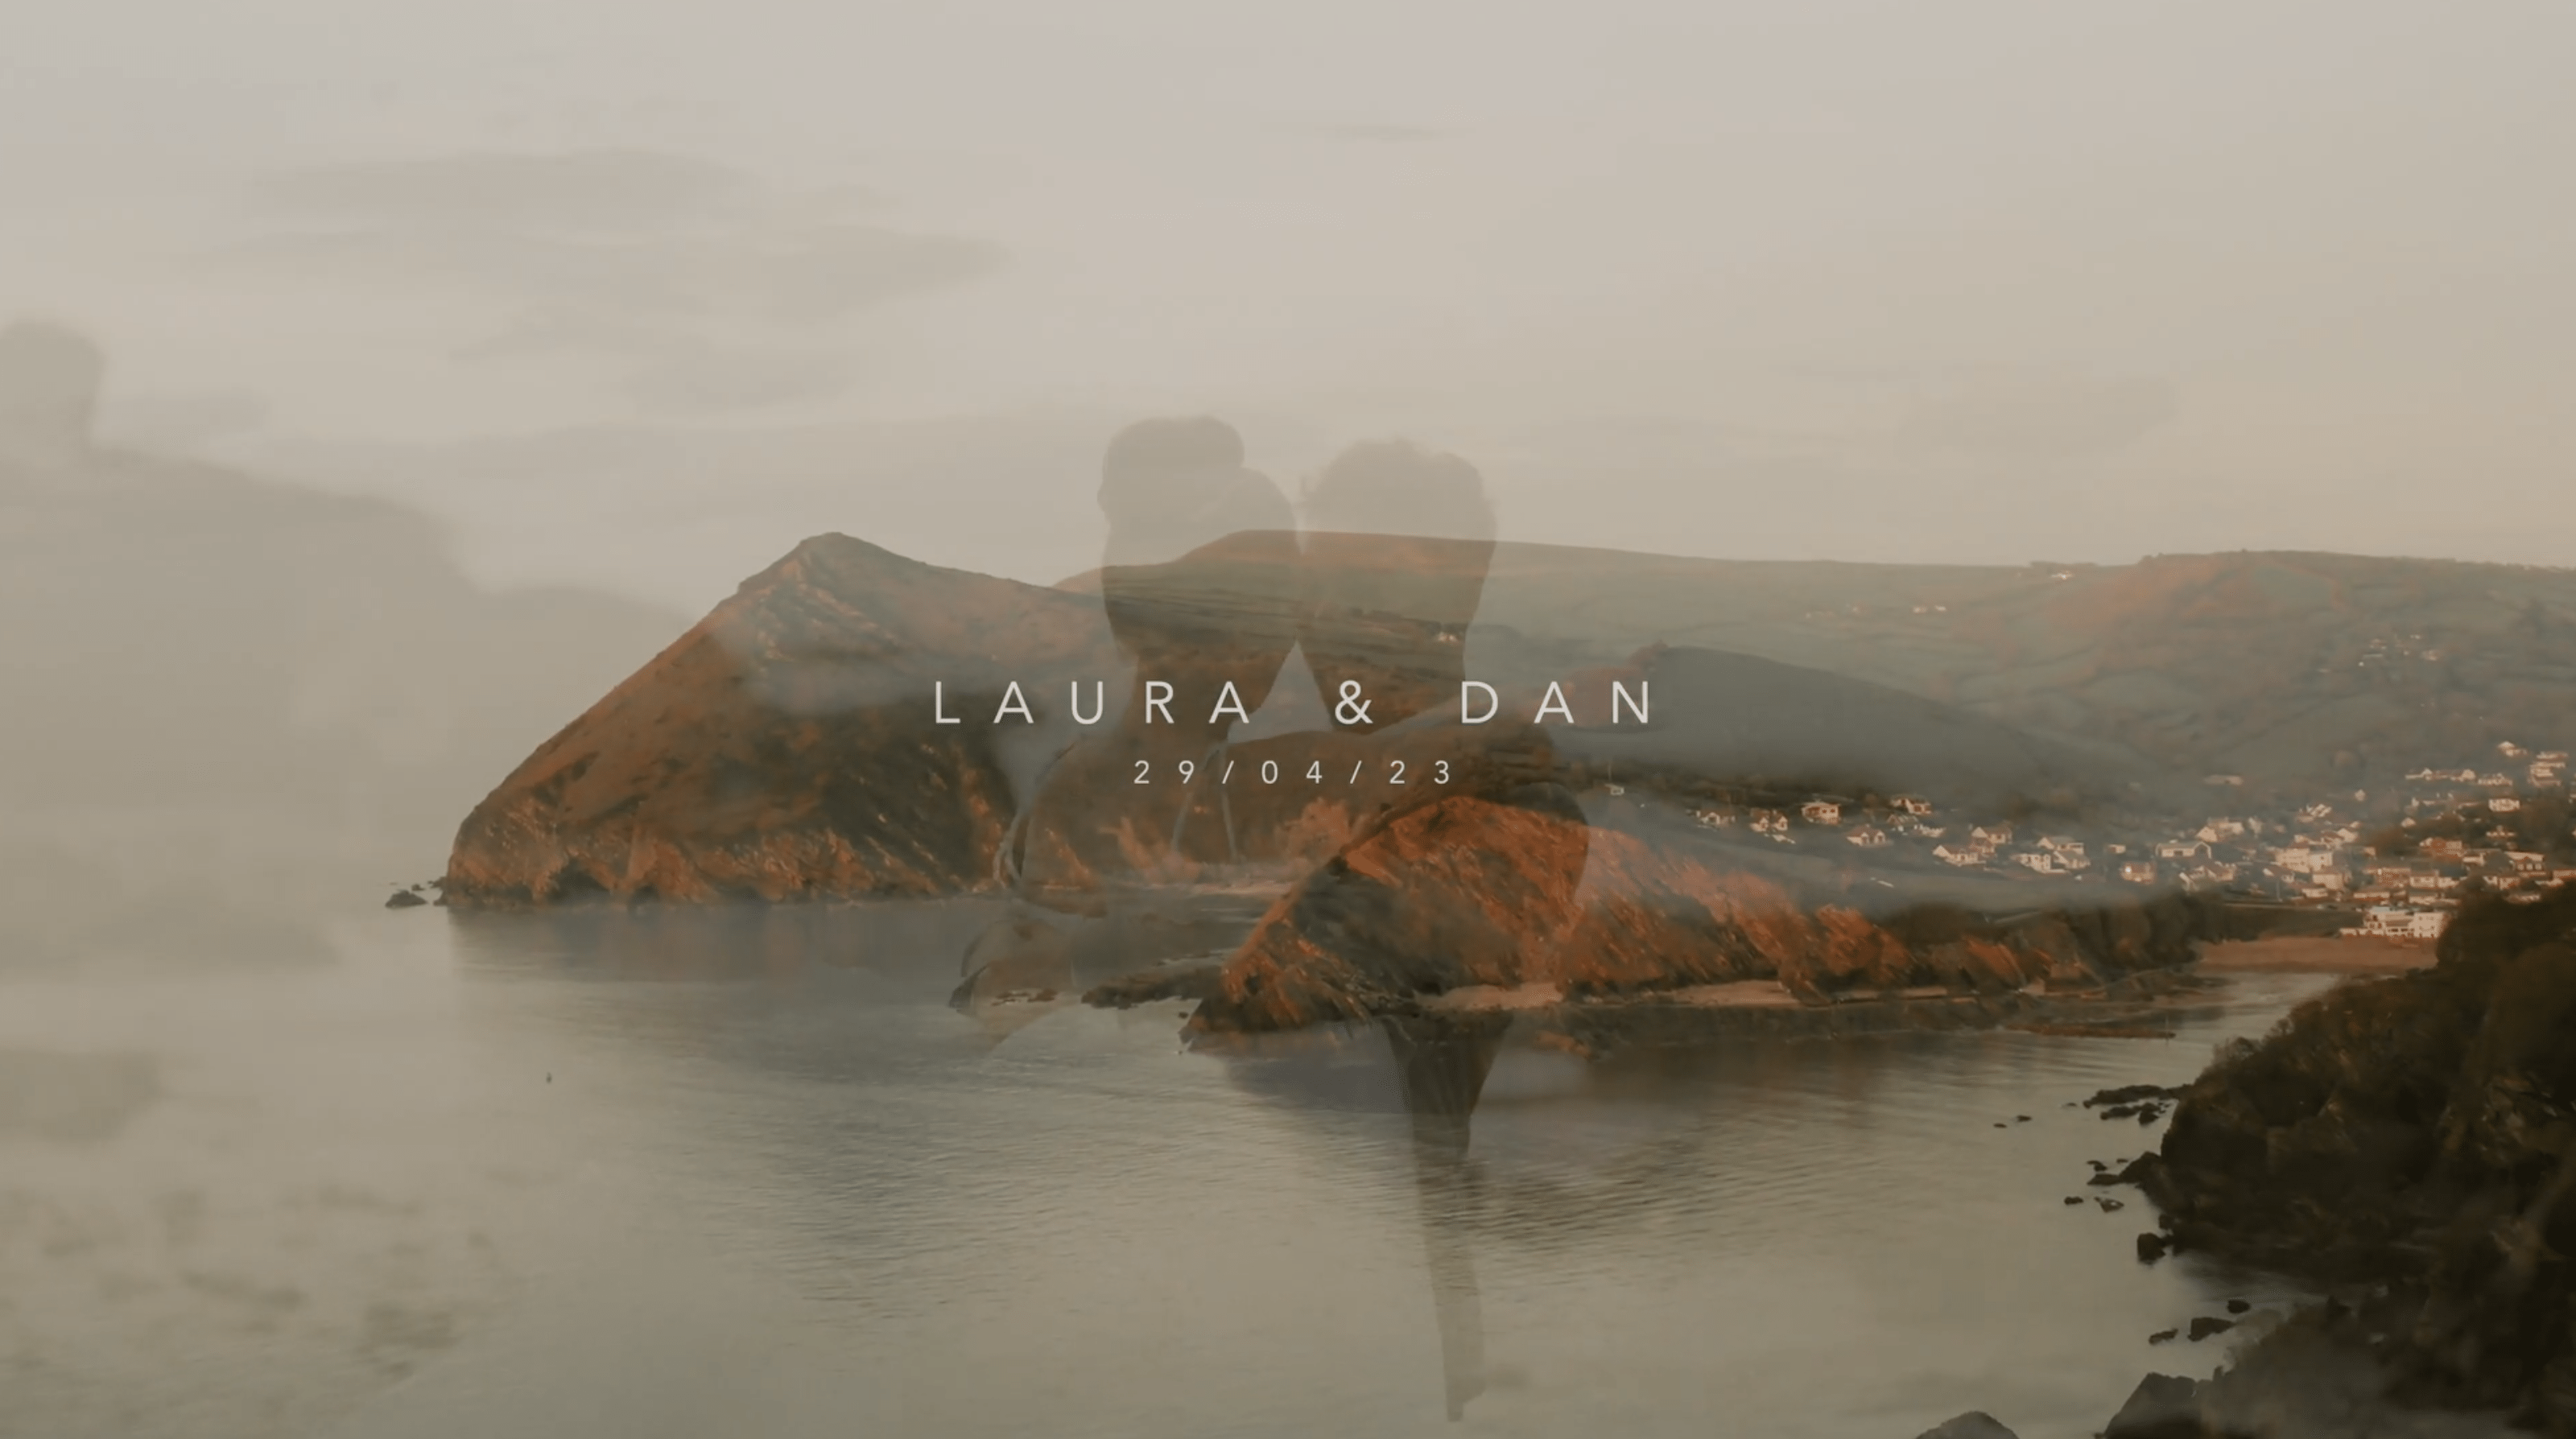 Laura & Dan